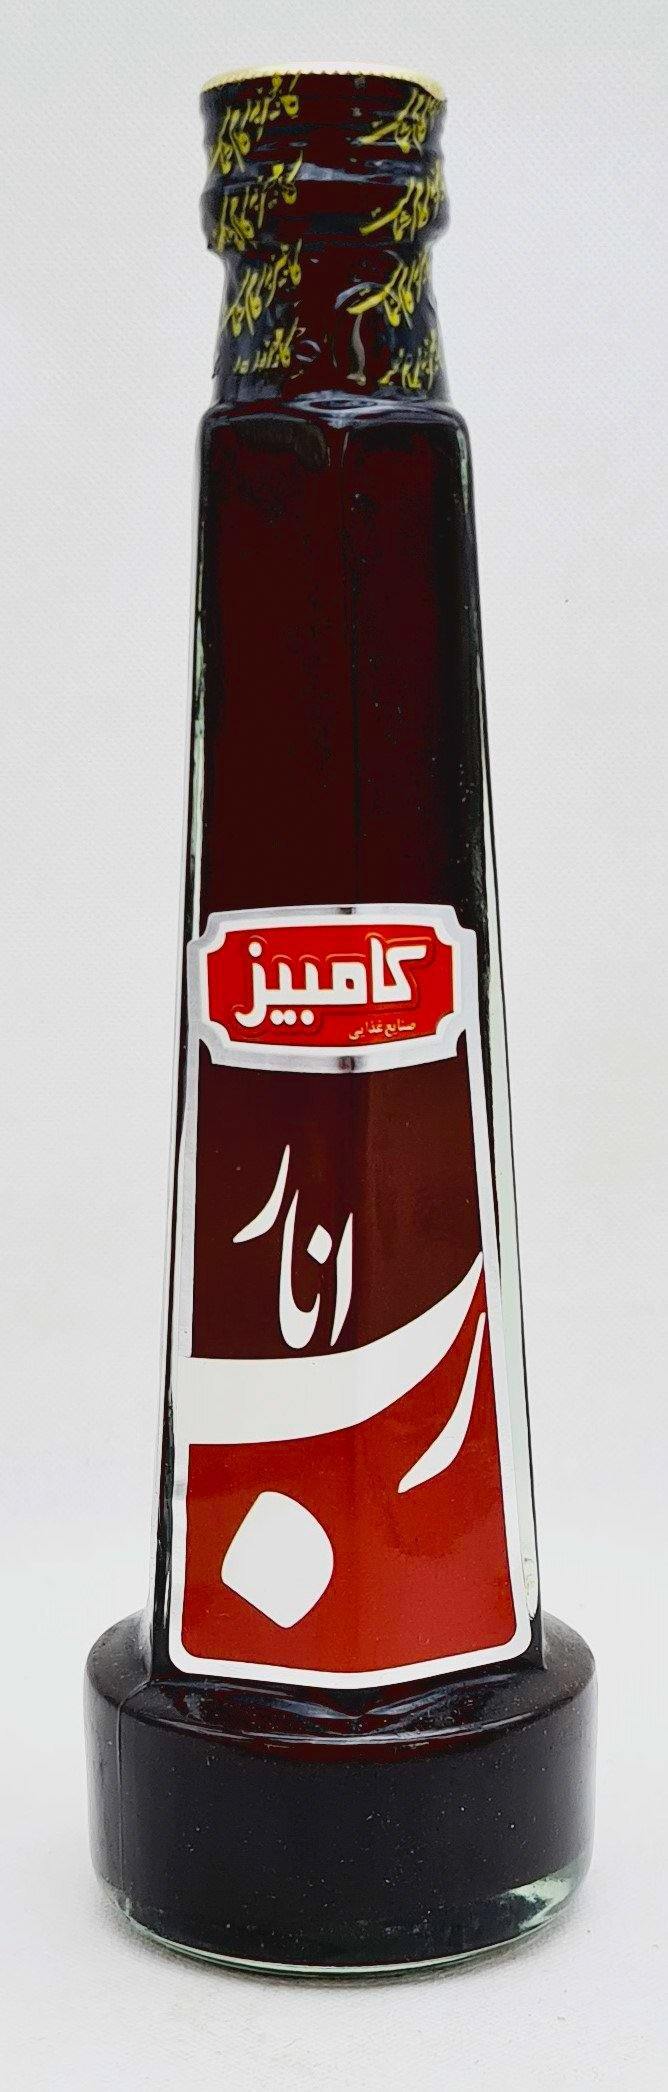 Kambiz Robe Anar - Granatapfelsoße 250/350g - Persienmarkt